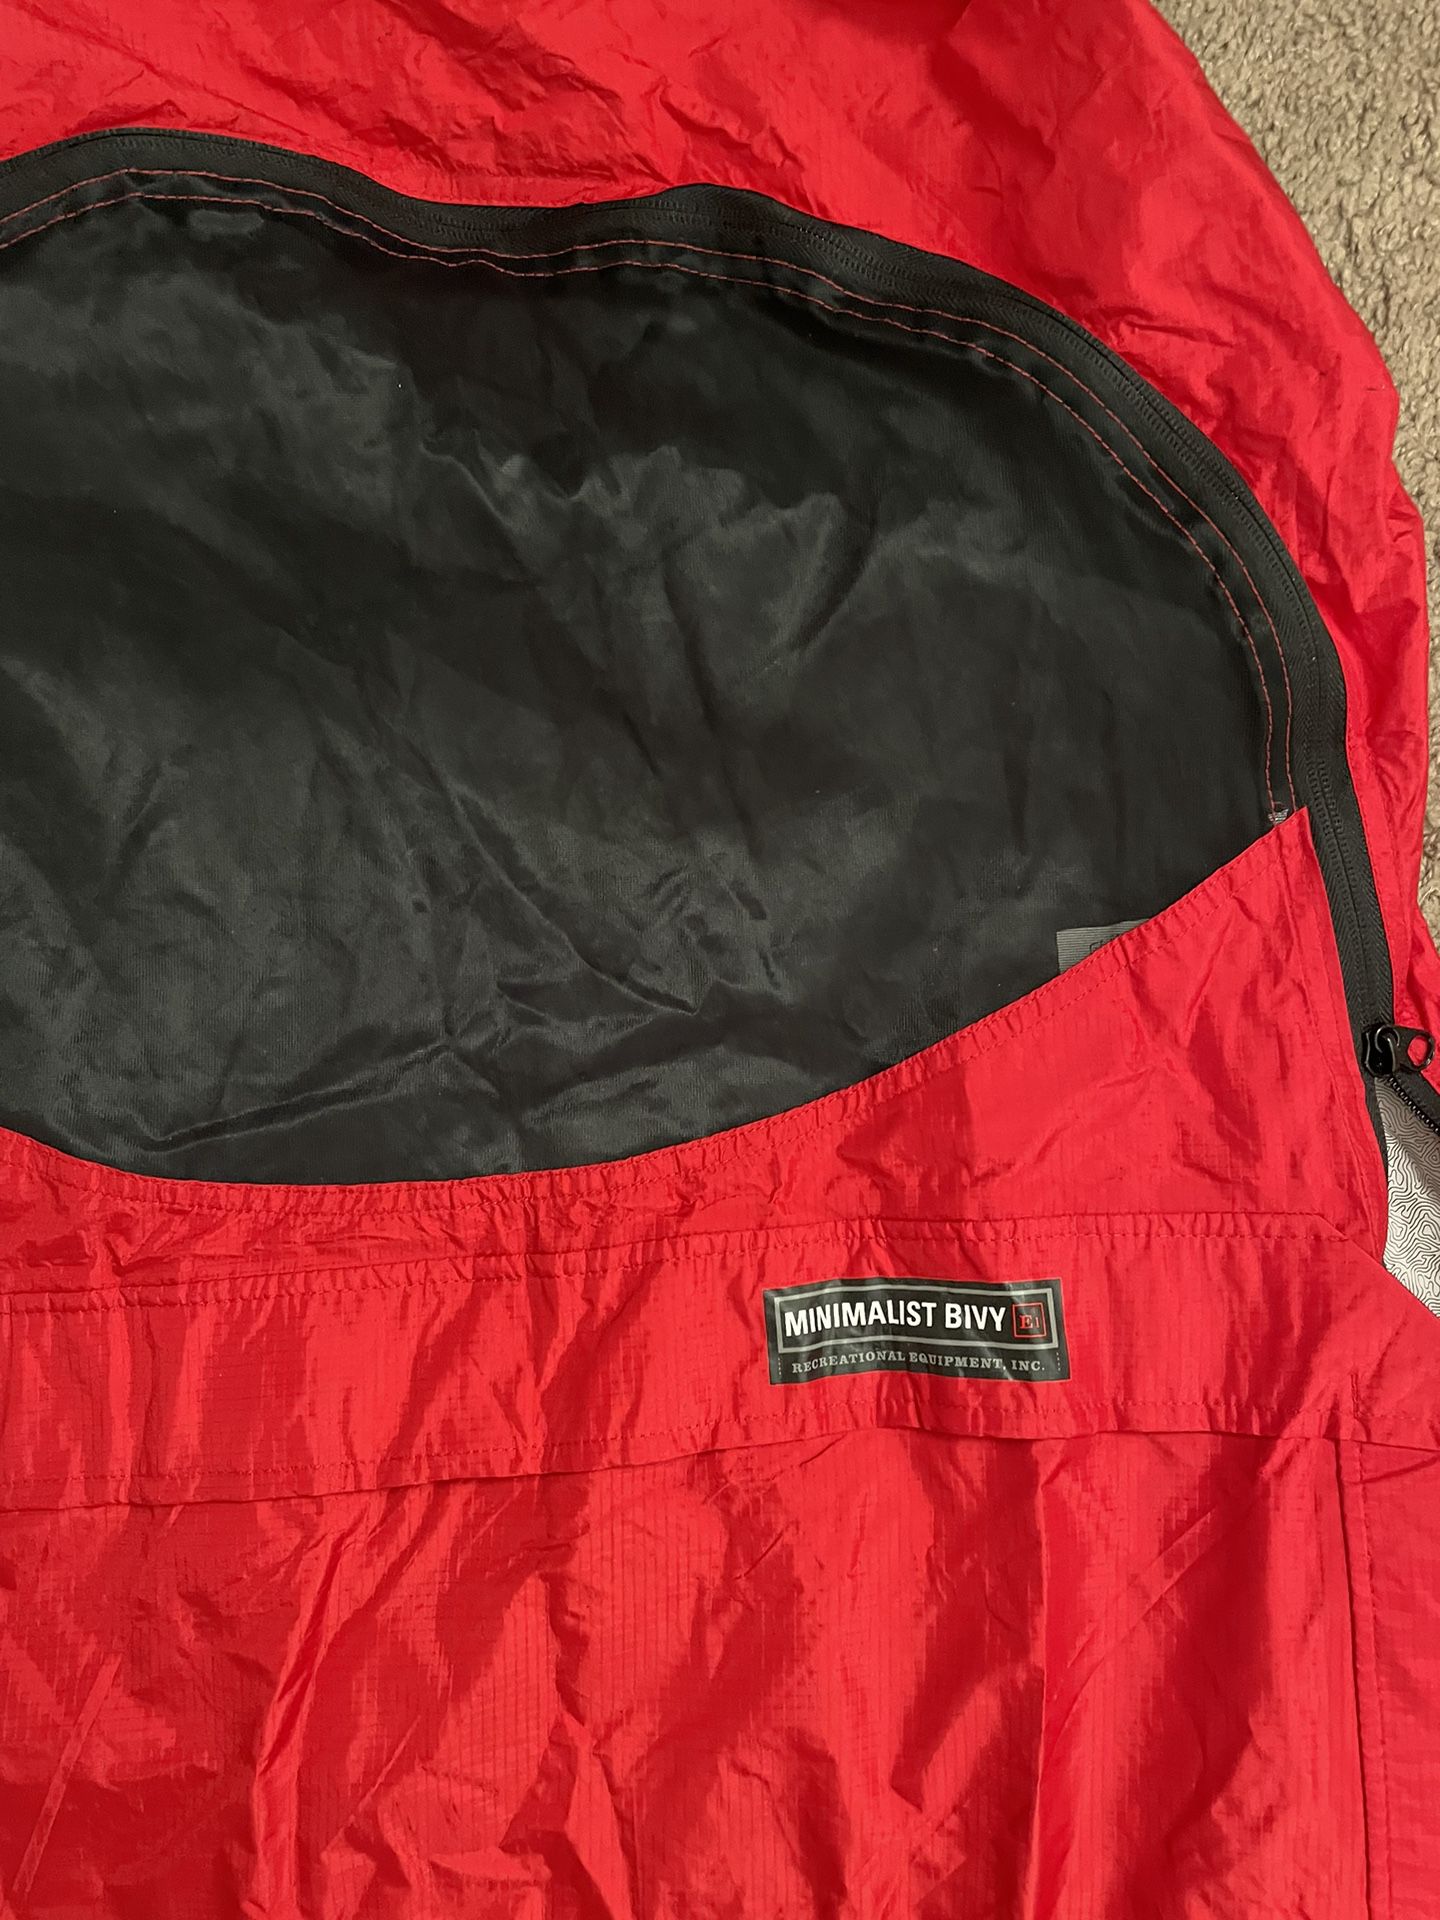 REI Bivy Sack And Sleeping Bag Liner 